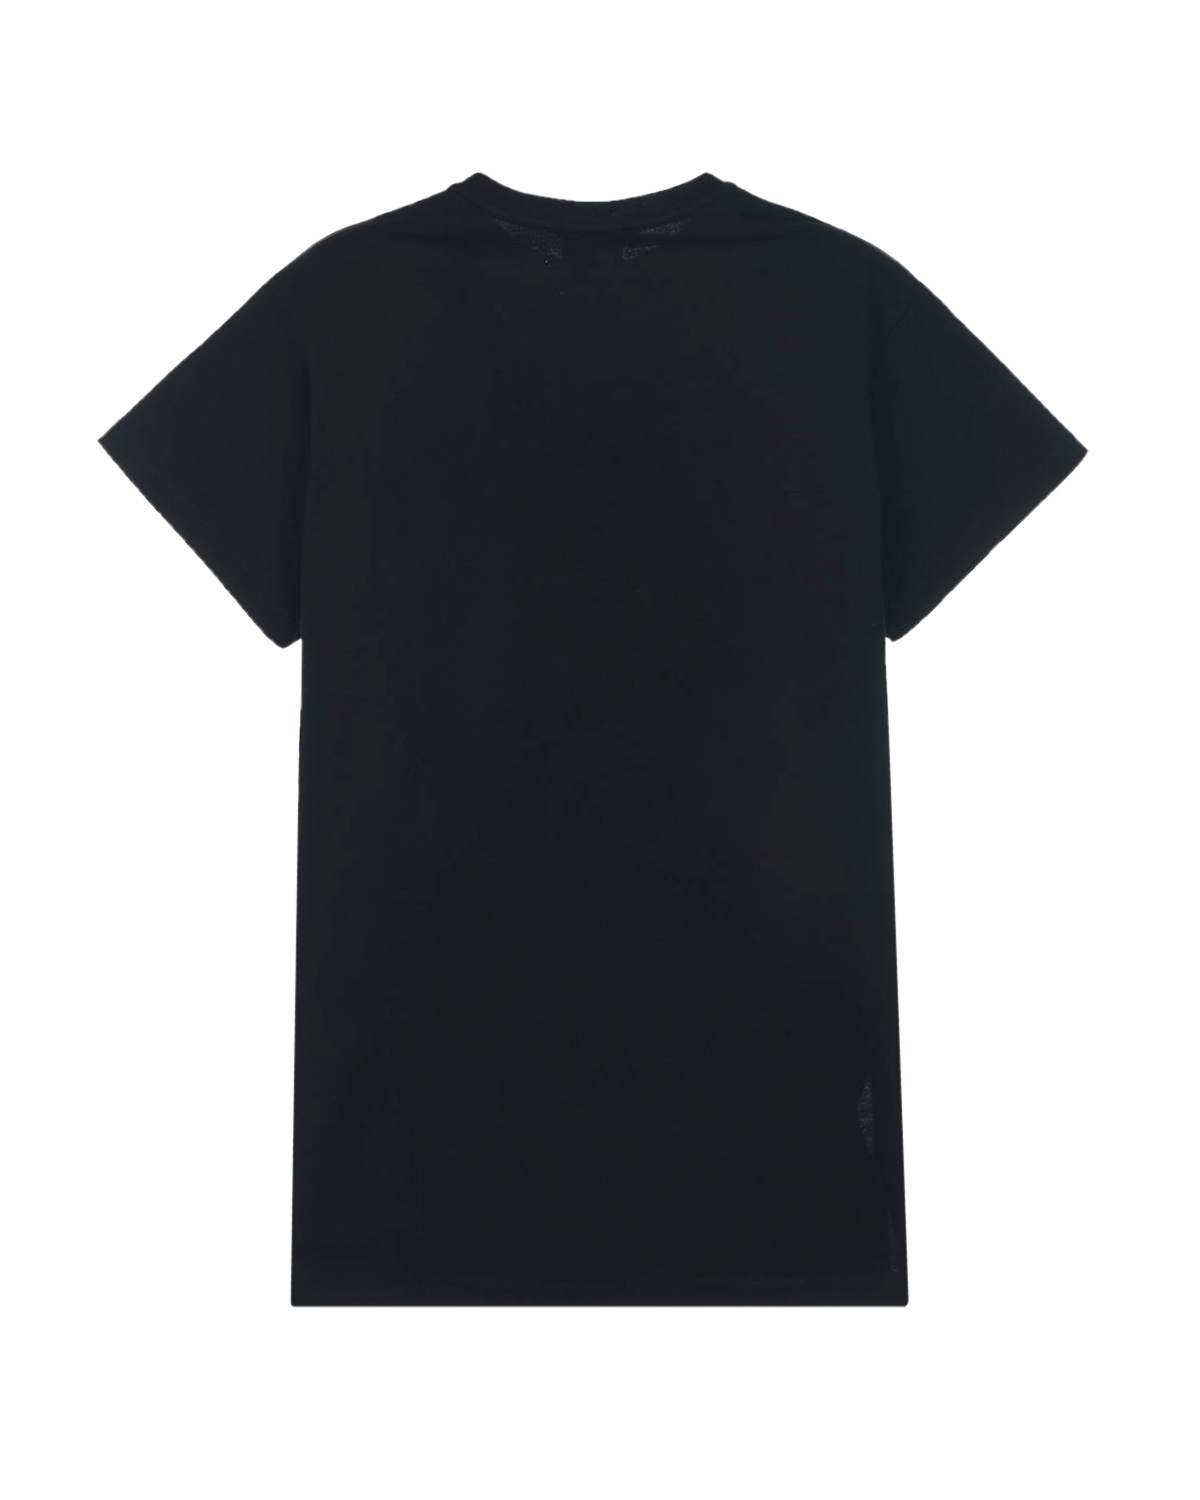 Удлиненная футболка с логотипом Fendi детская, размер 128, цвет черный - фото 2